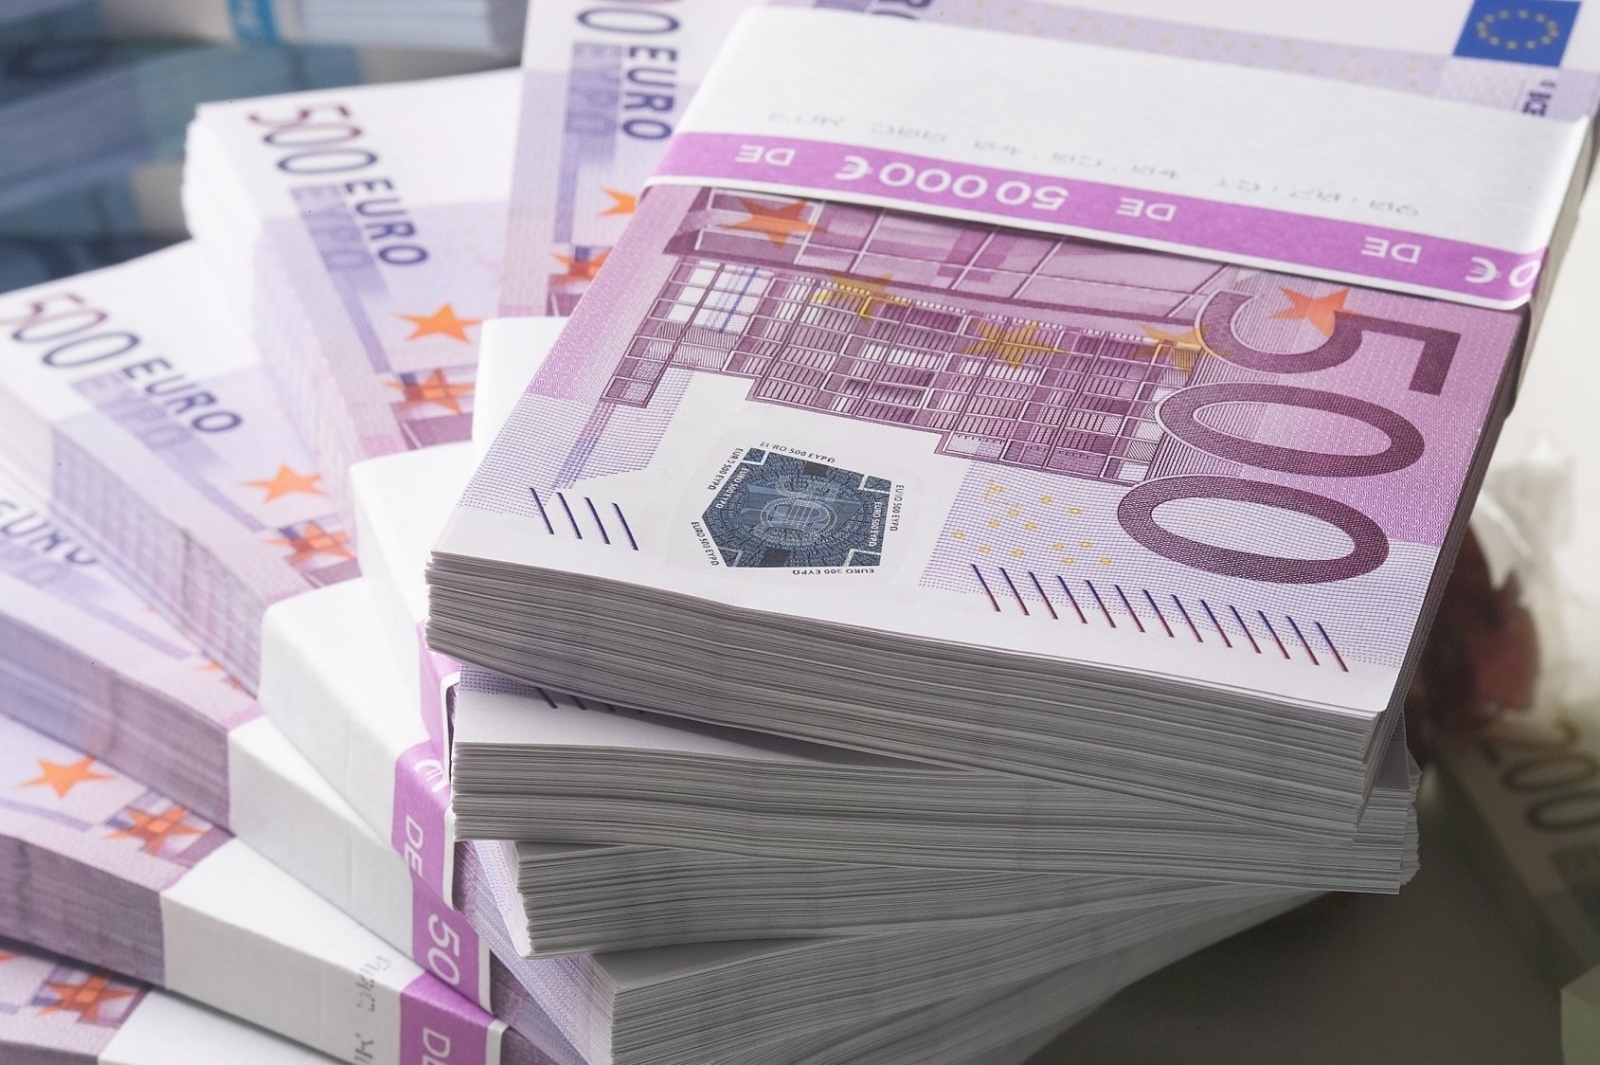 Θησαυροί εκατομμυρίων ευρώ σε τραπεζικούς λογαριασμούς – Μισθωτός βρέθηκε με καταθέσεις 41 εκατ. ευρώ!